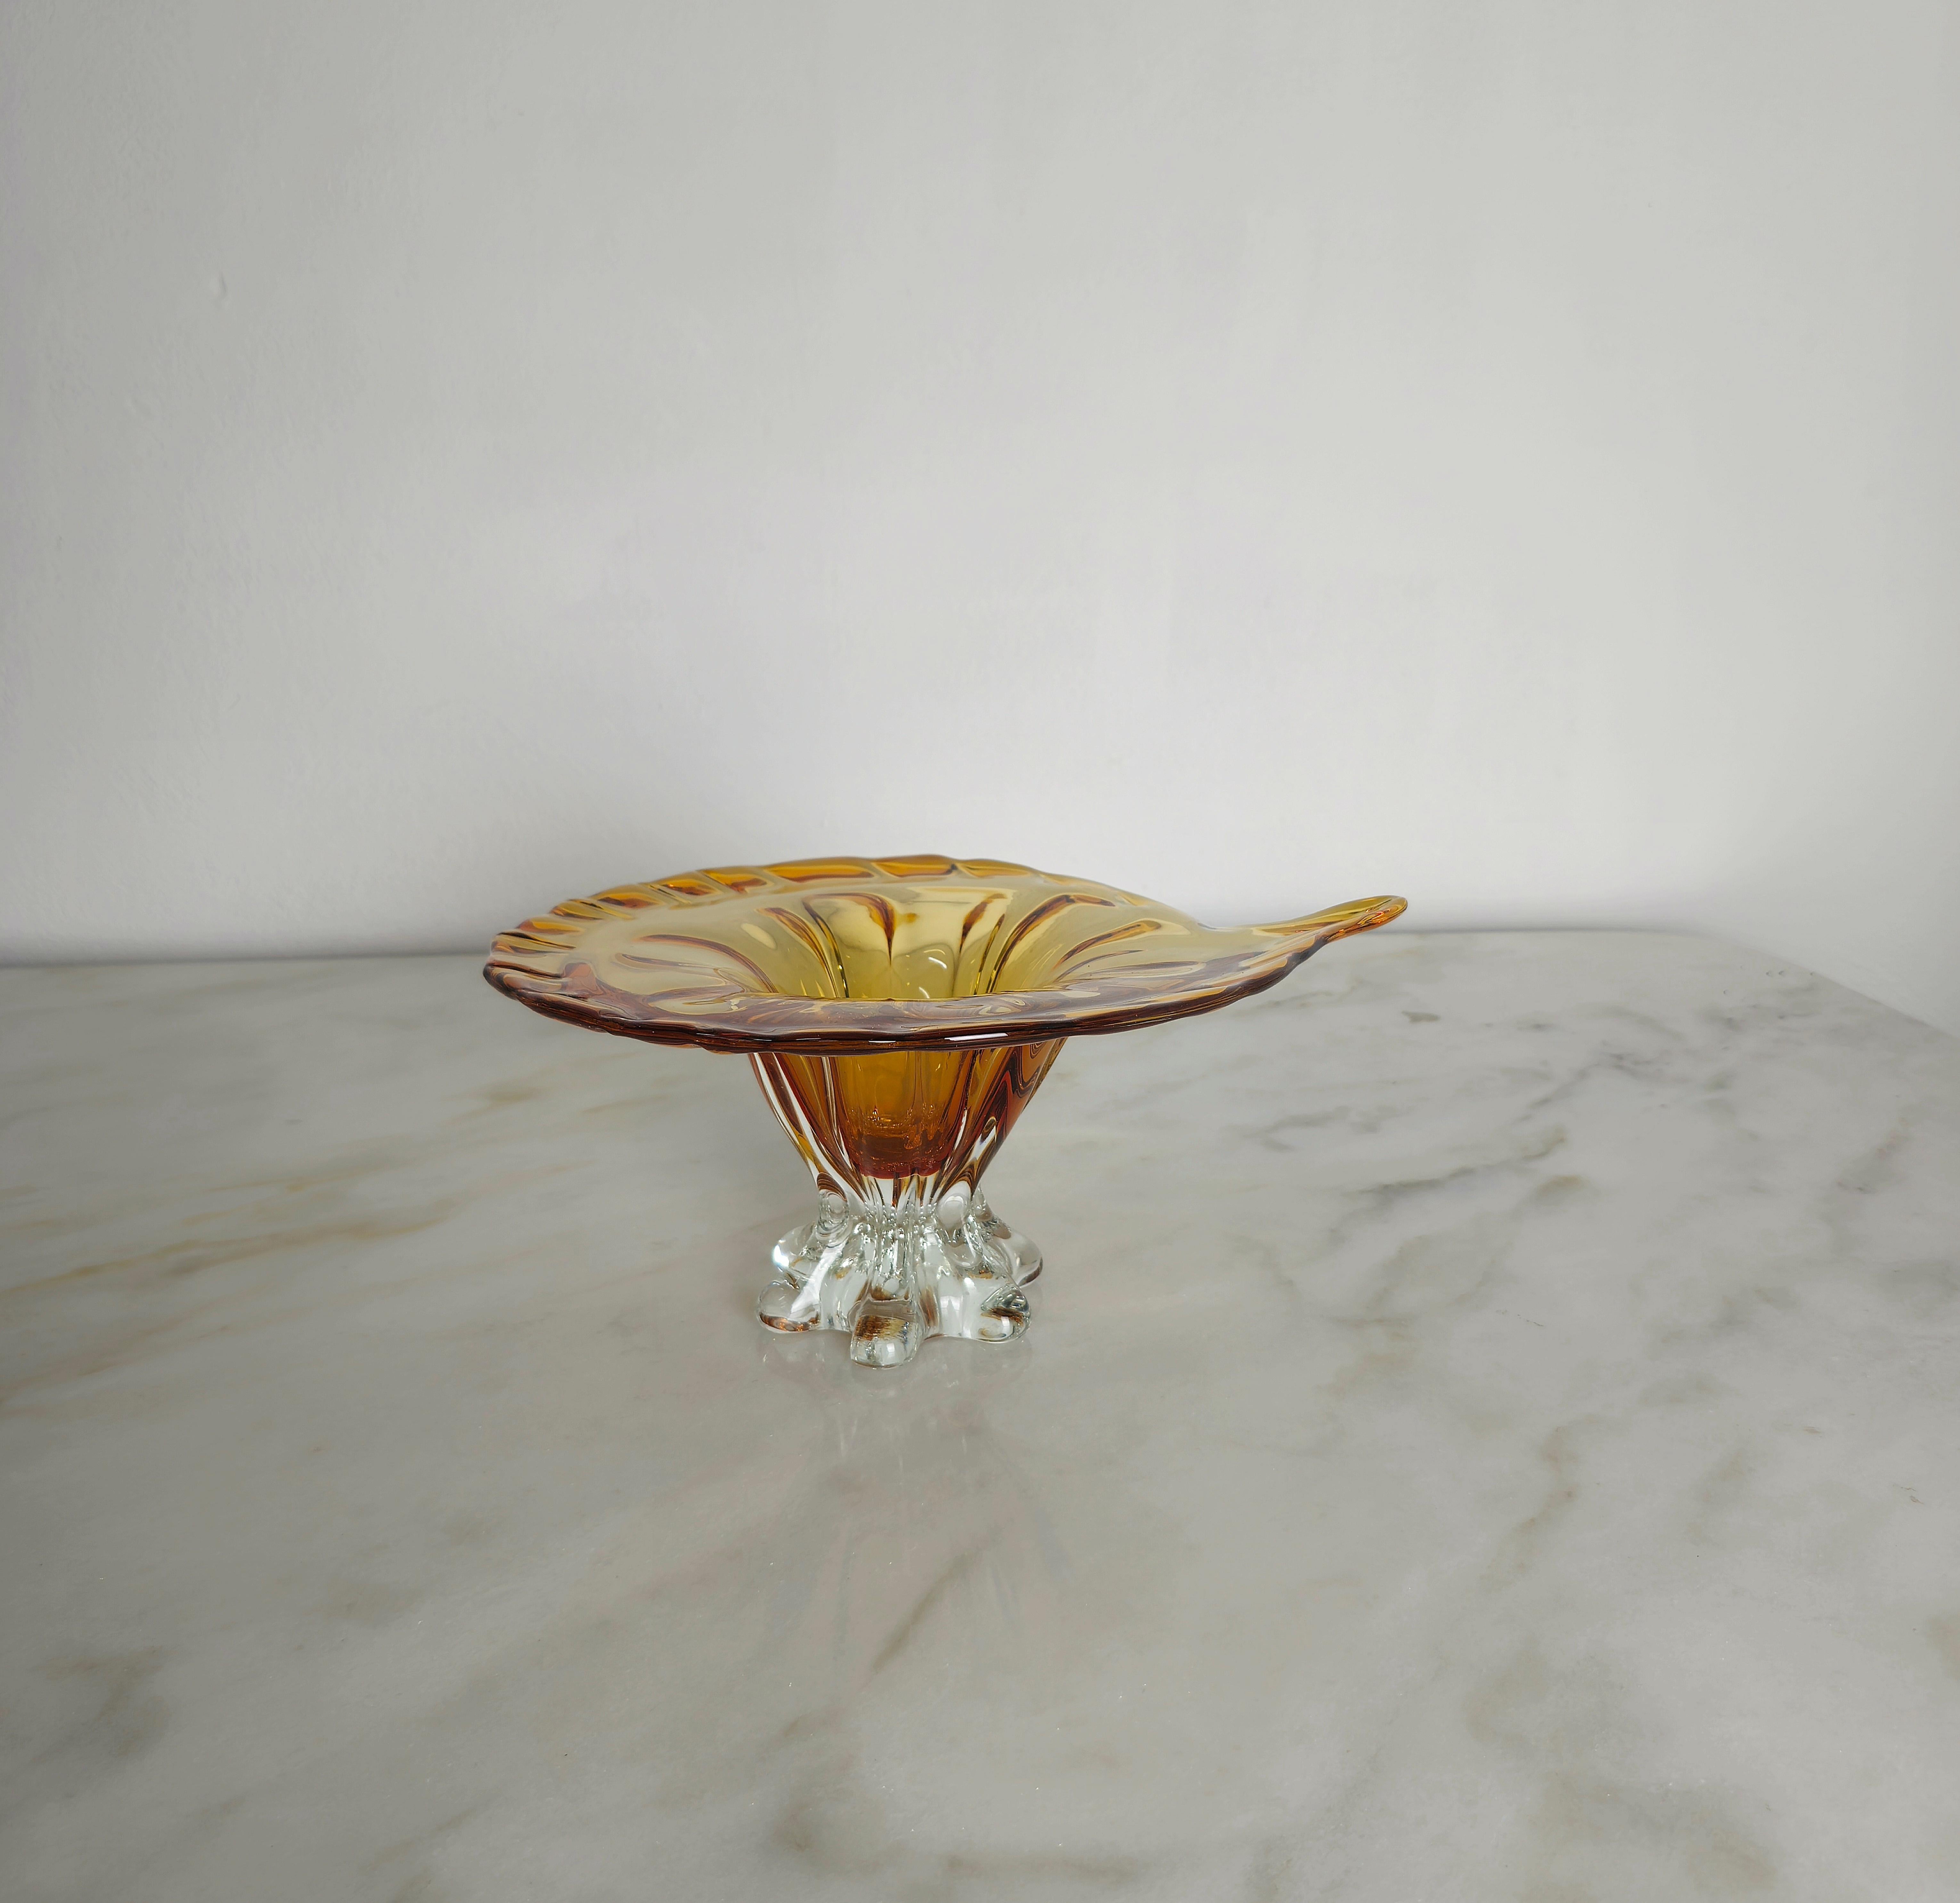 Support/centre de table de forme particulière en verre de Murano dans la teinte du caramel avec base transparente. Fabriqué en Italie dans les années 70.



Note : Nous essayons d'offrir à nos clients un excellent service, même pour les envois dans